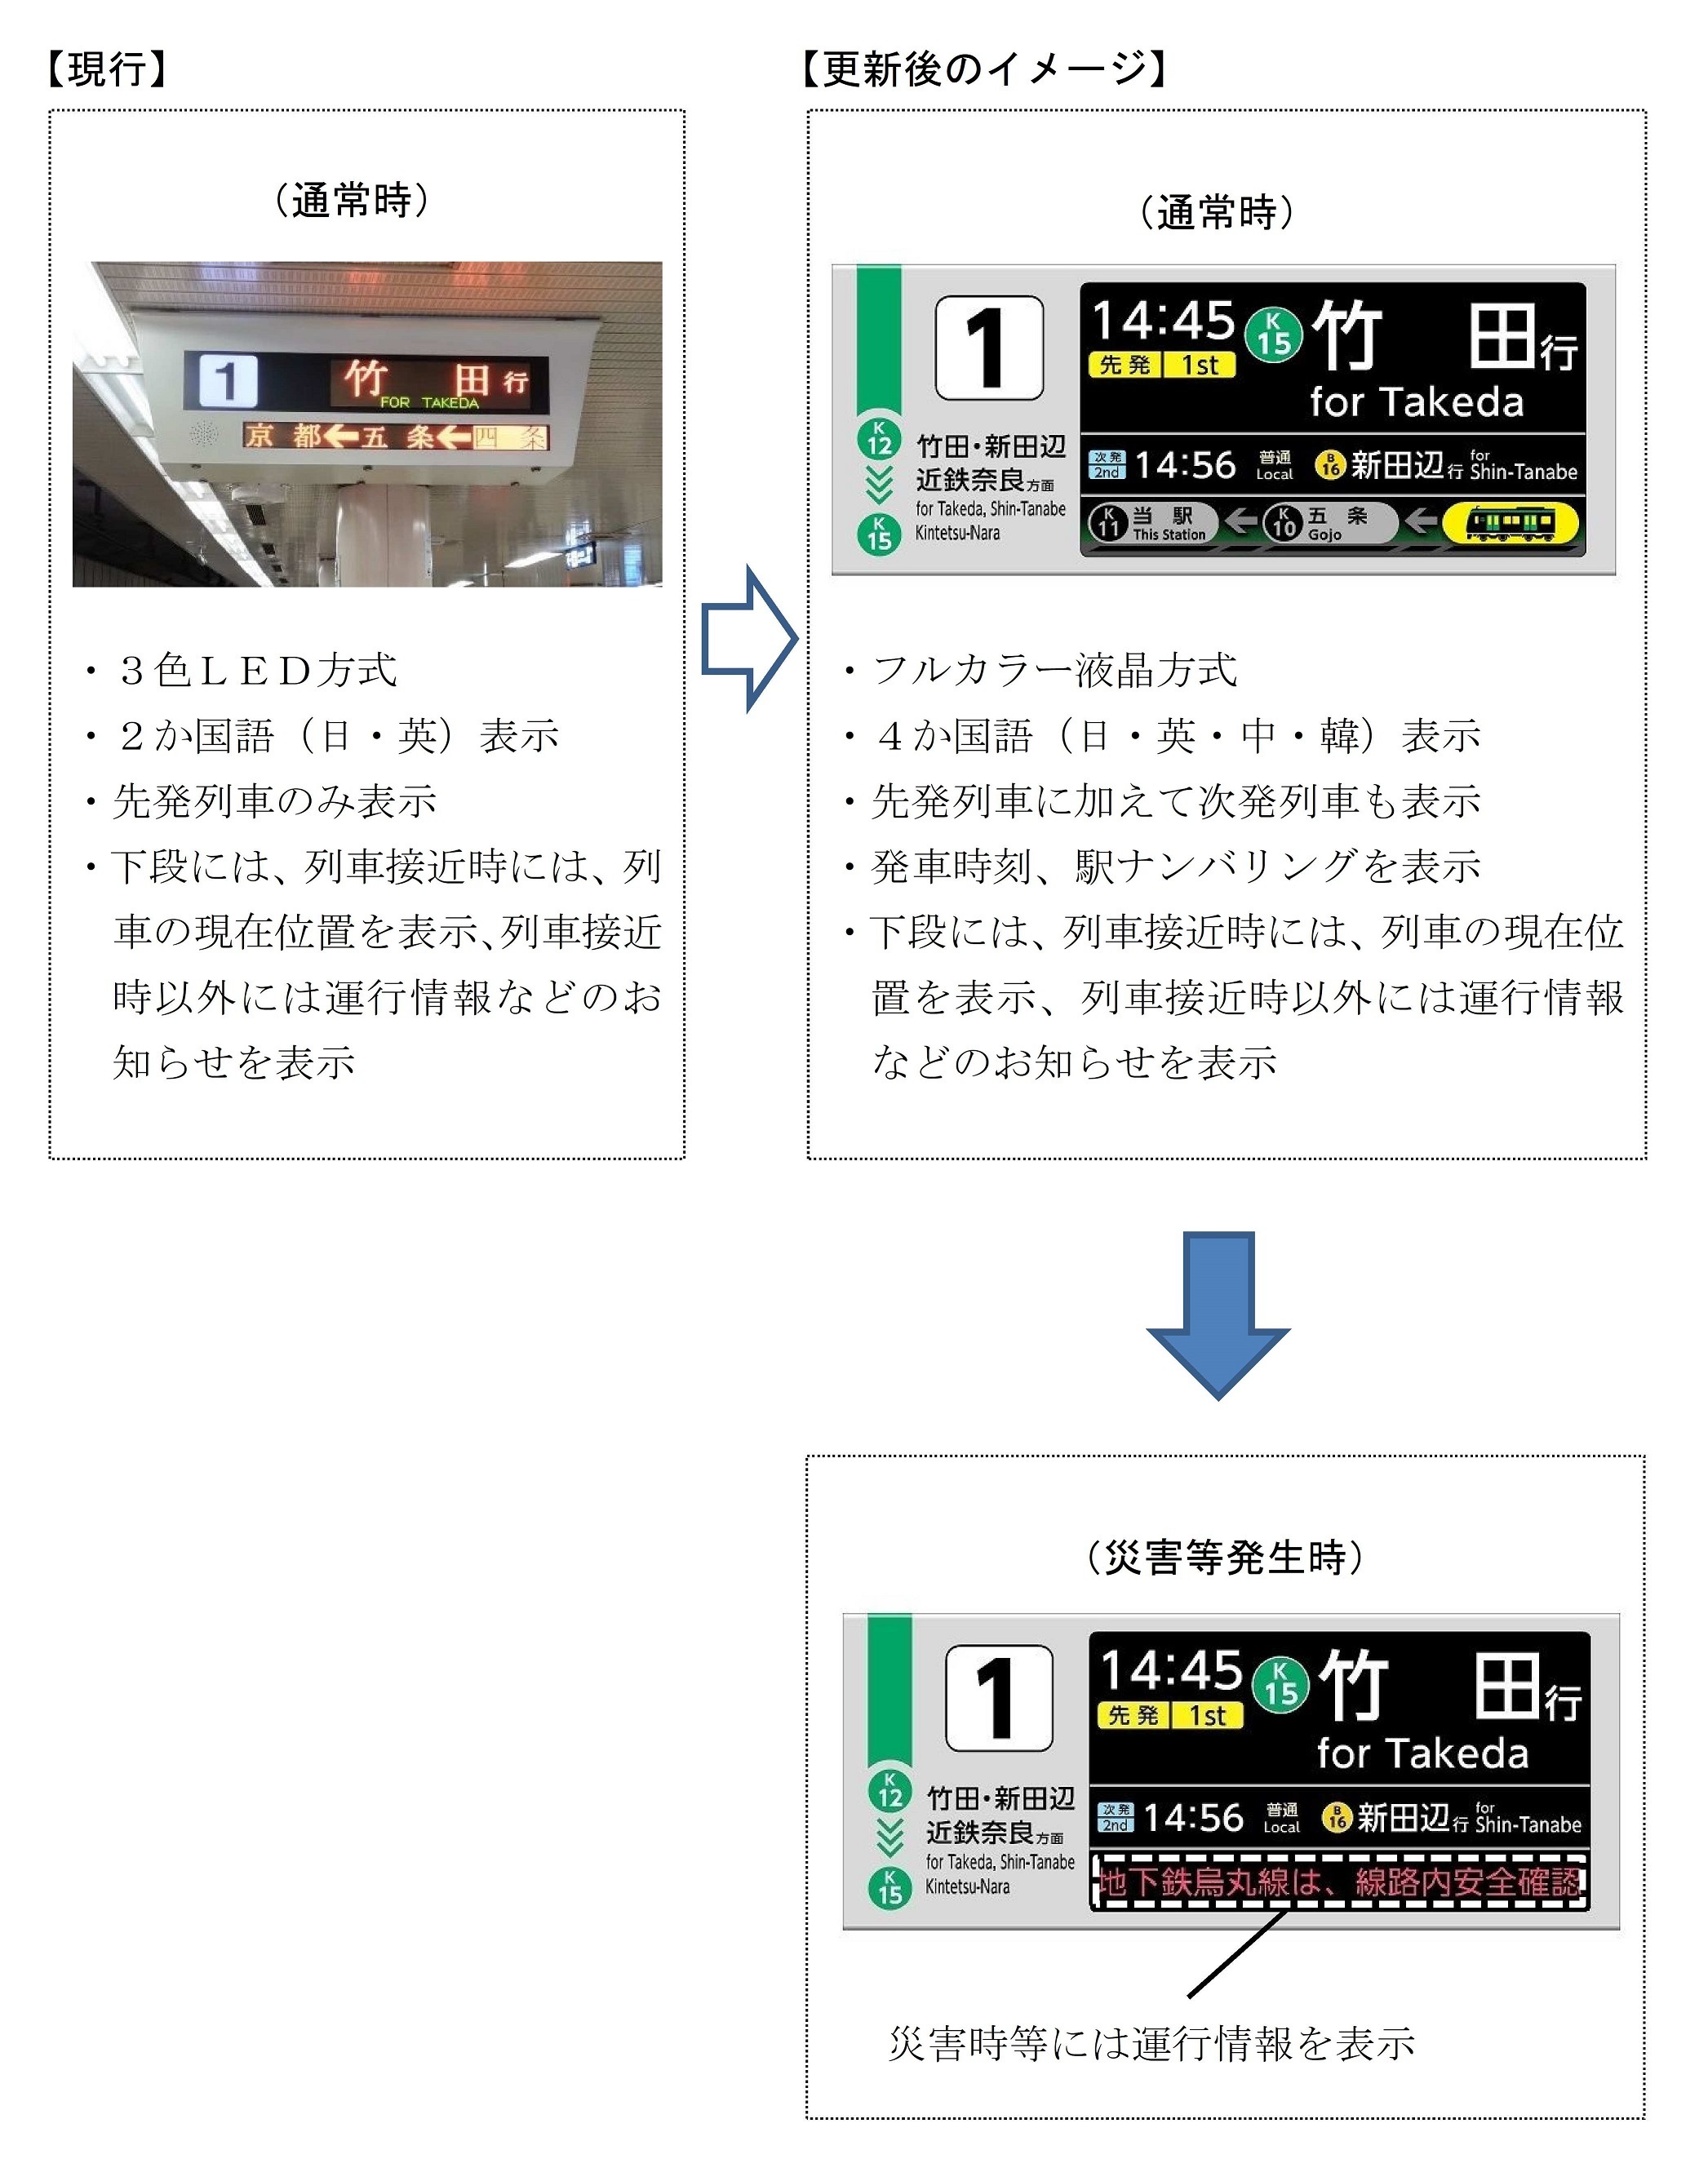 現行の列車案内表示器と更新後の列車案内表示器（イメージ）